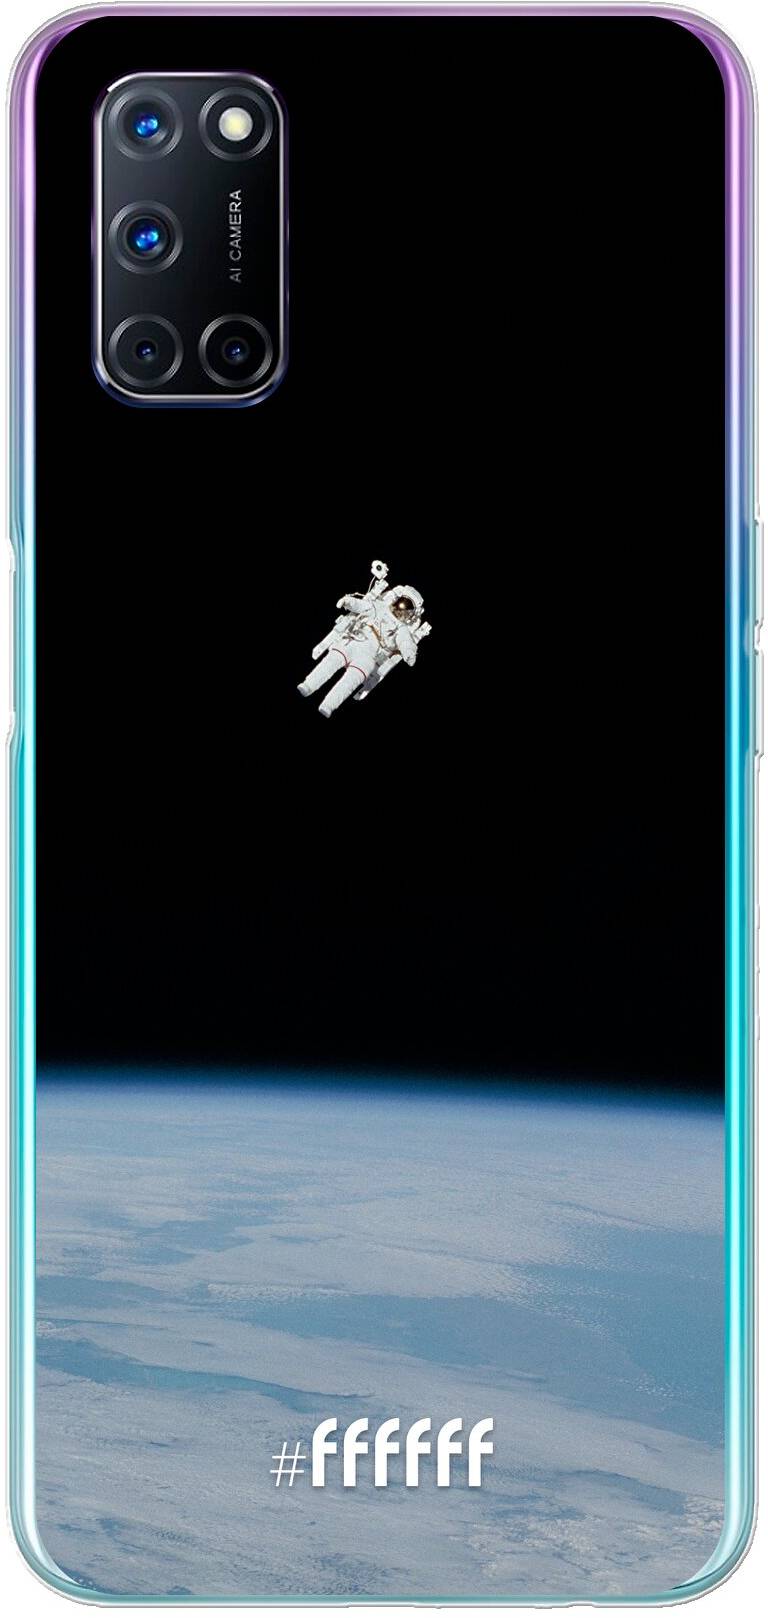 Spacewalk A92